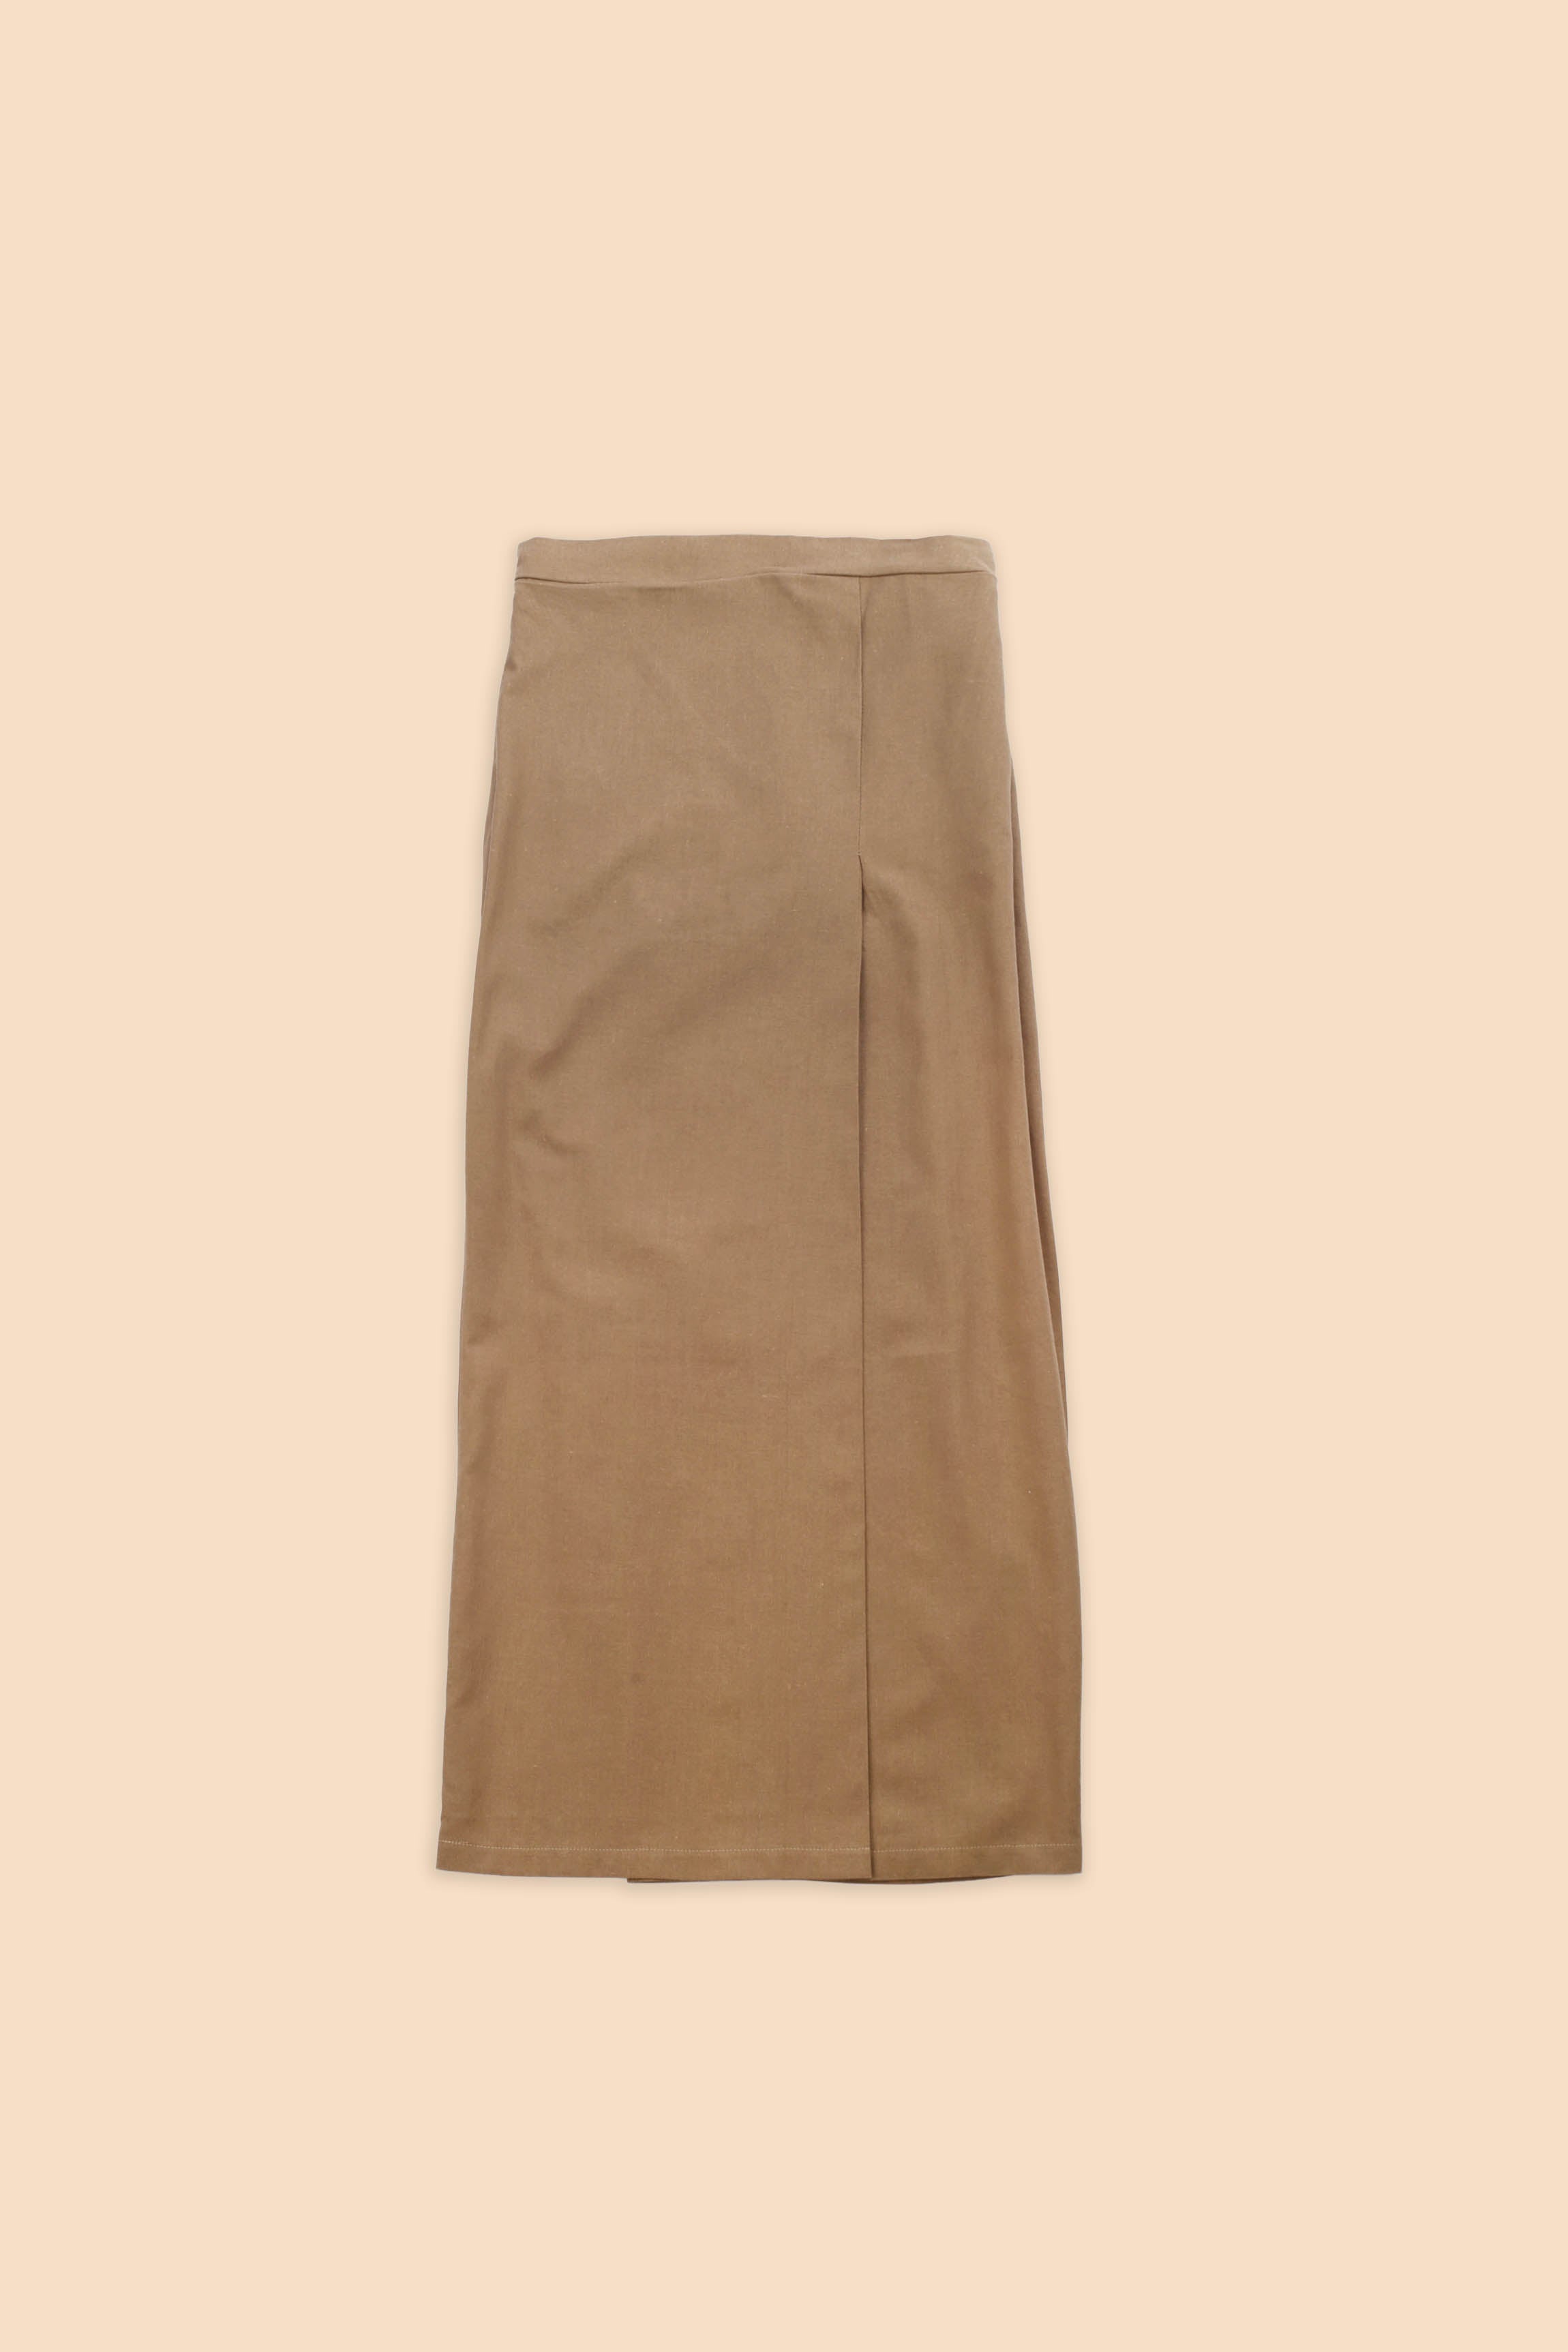 cotton linen women bottom skirts 